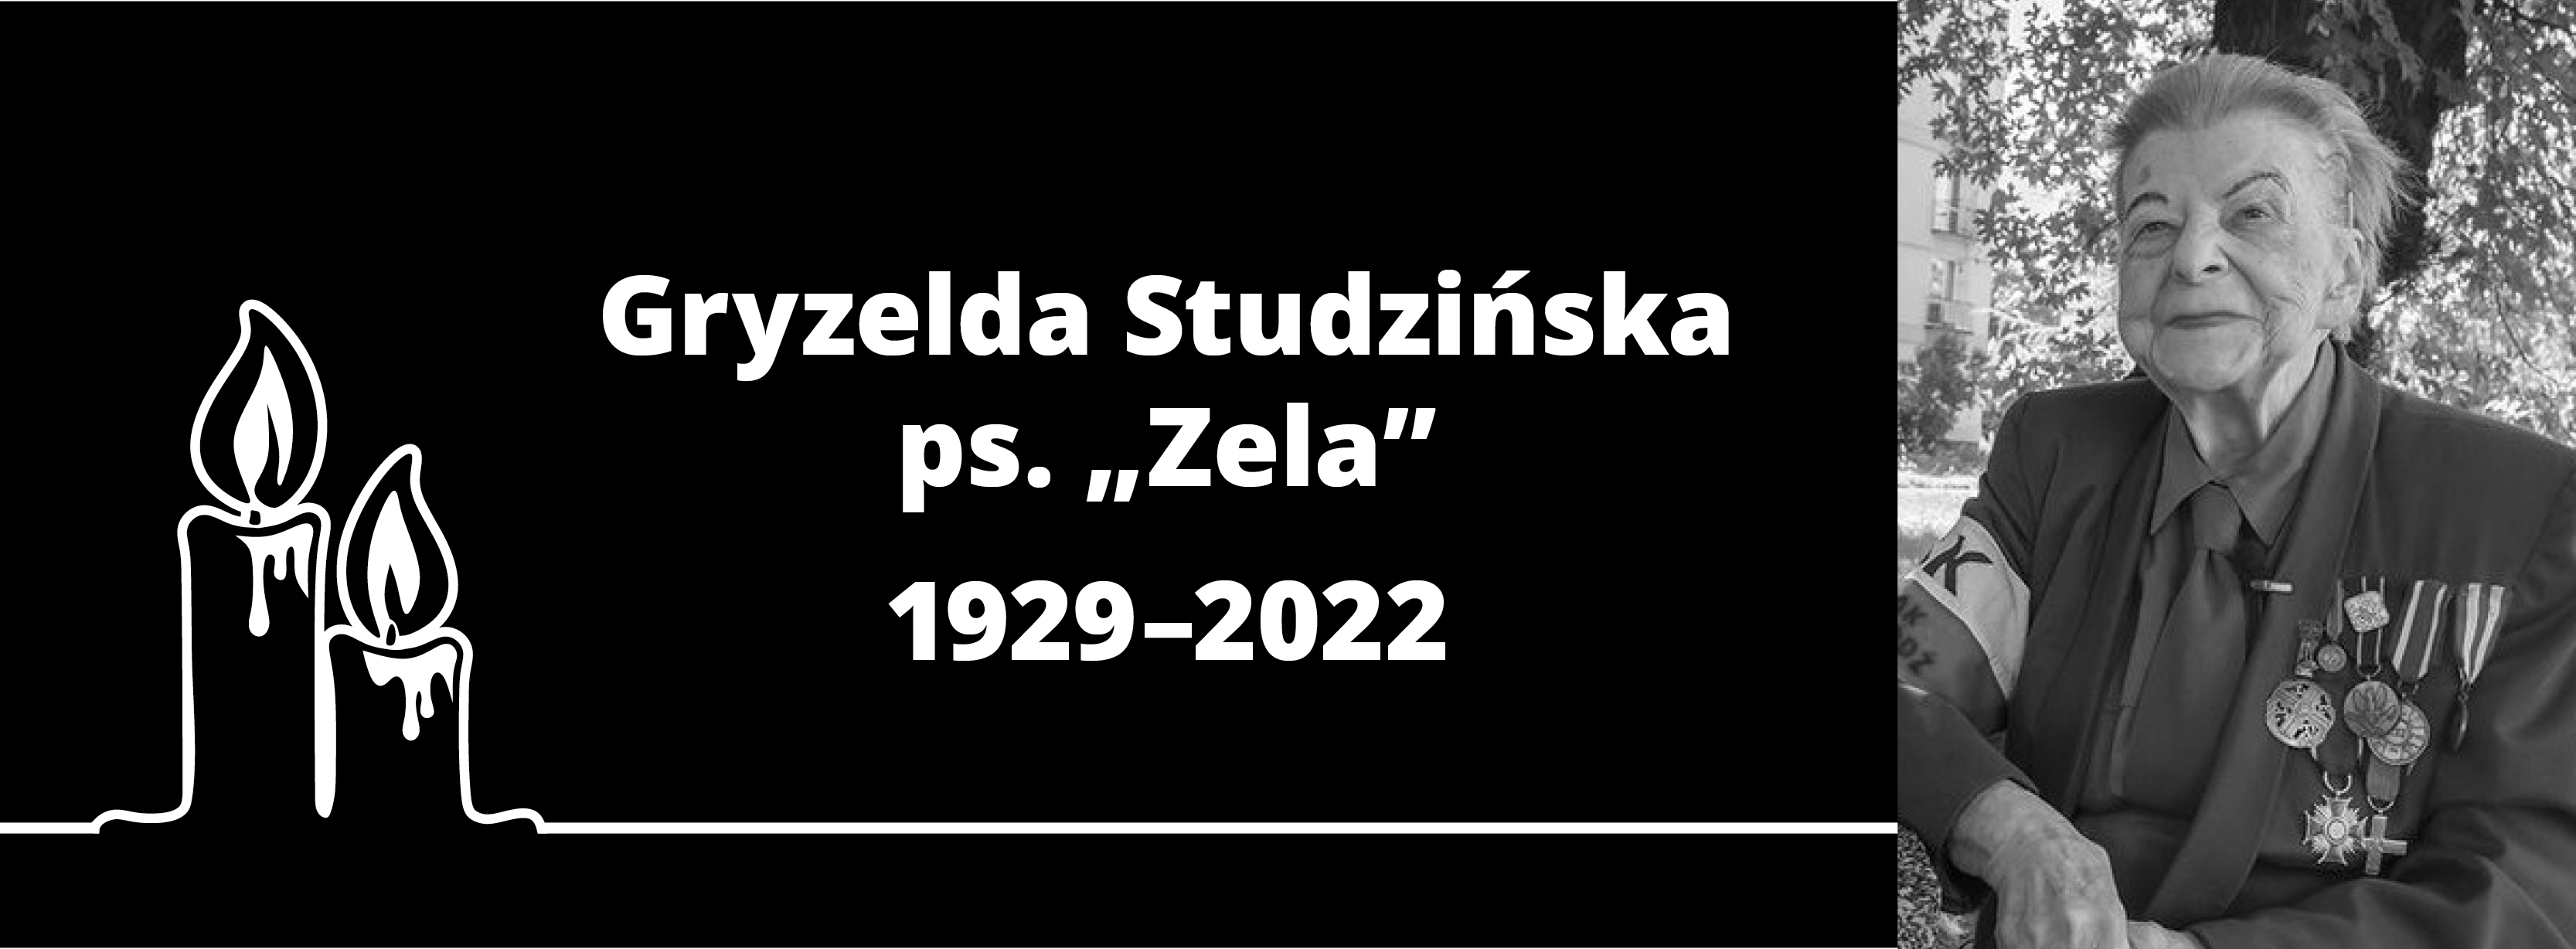 1200 SZZAK n Gryzelda Studzinska